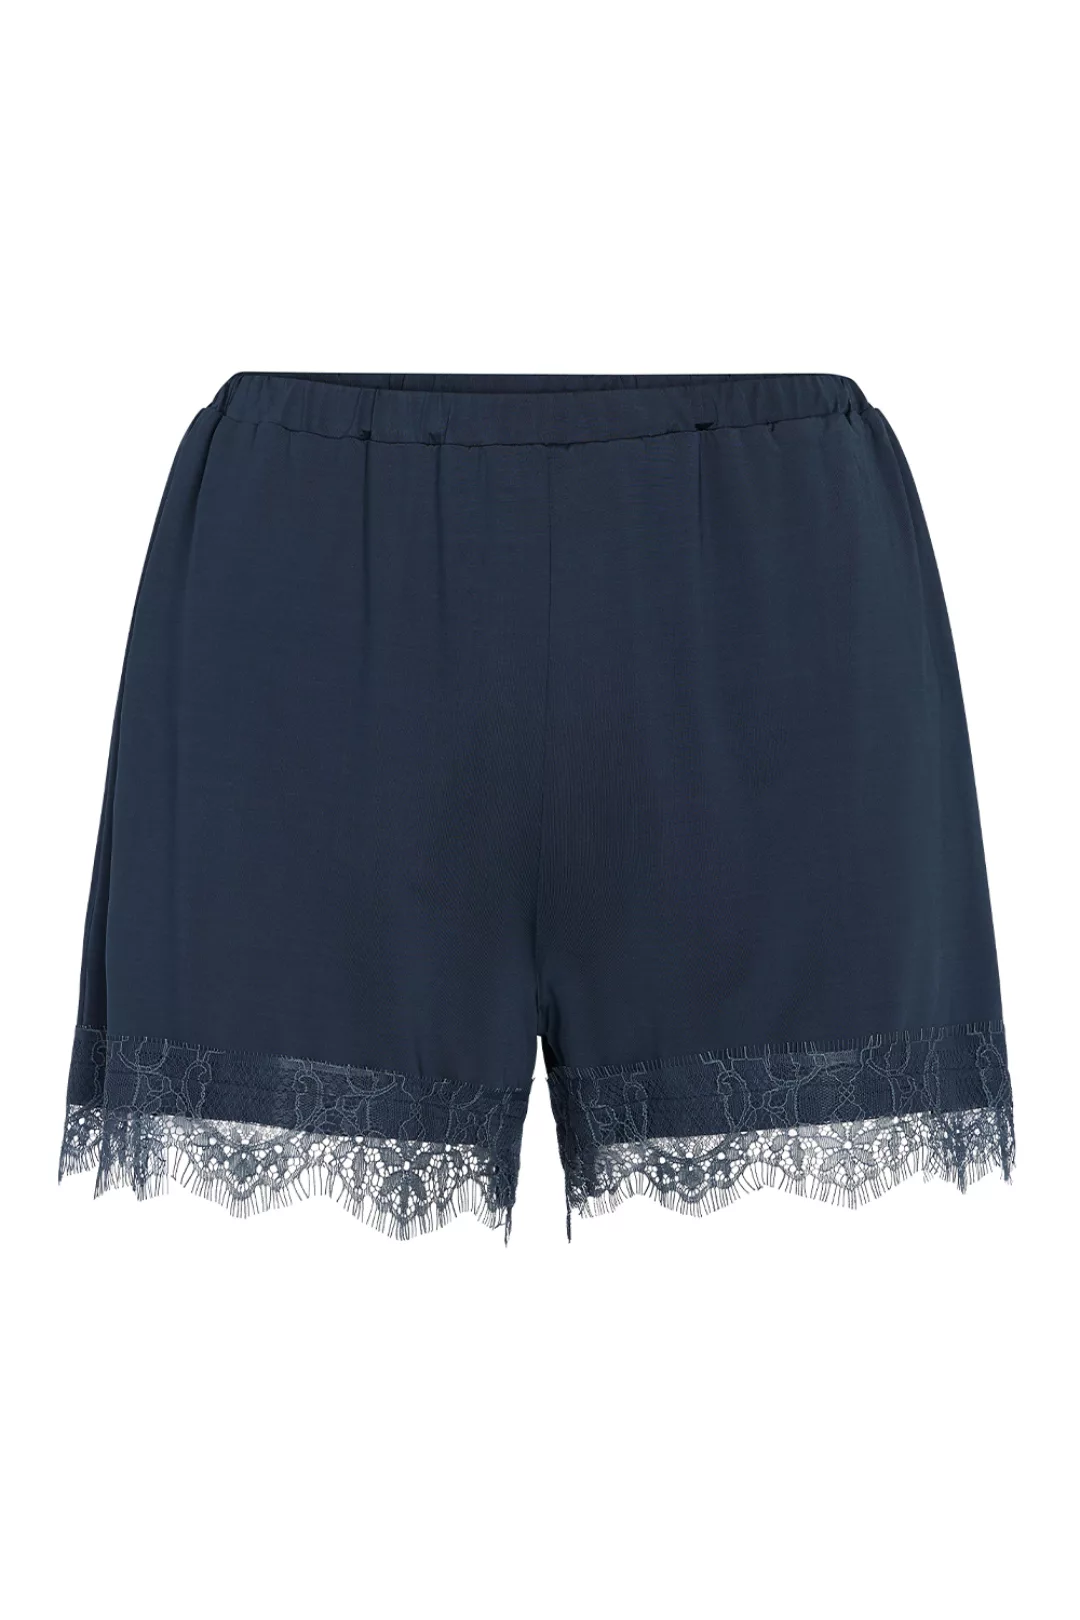 ESSENZA Natalie Uni Shorts Loungewear 4 44 blau günstig online kaufen